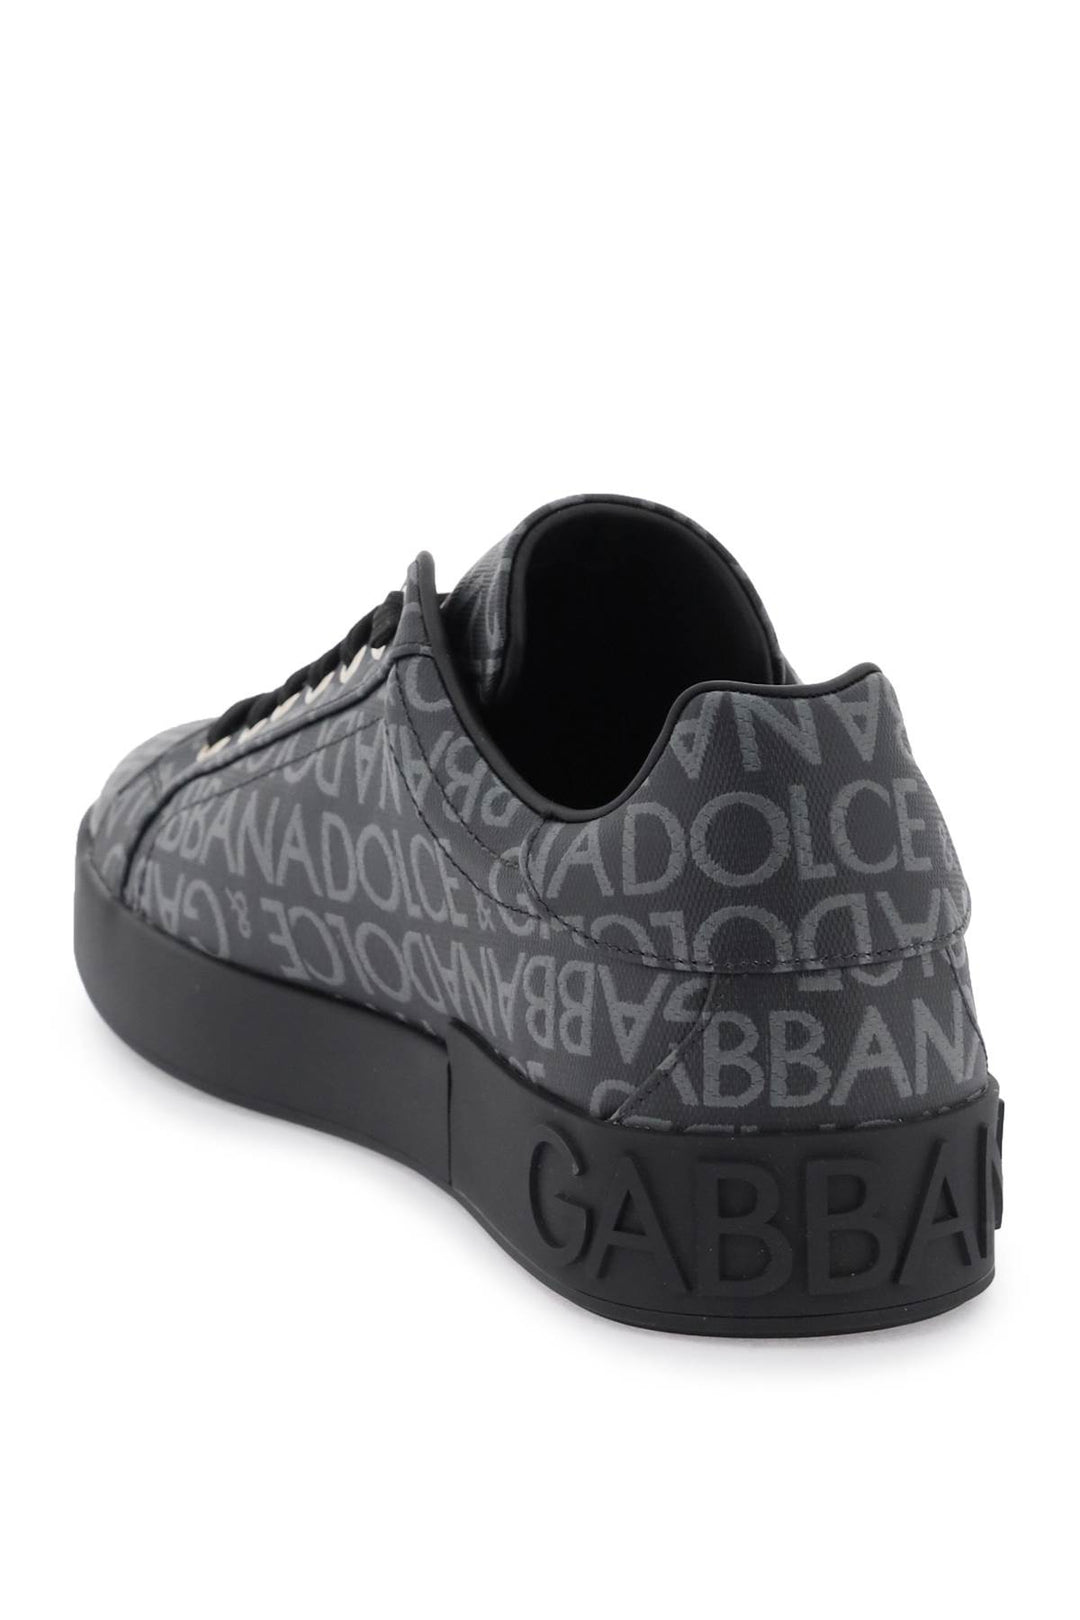 Sneakers Portofino In Jacquard - Dolce & Gabbana - Uomo